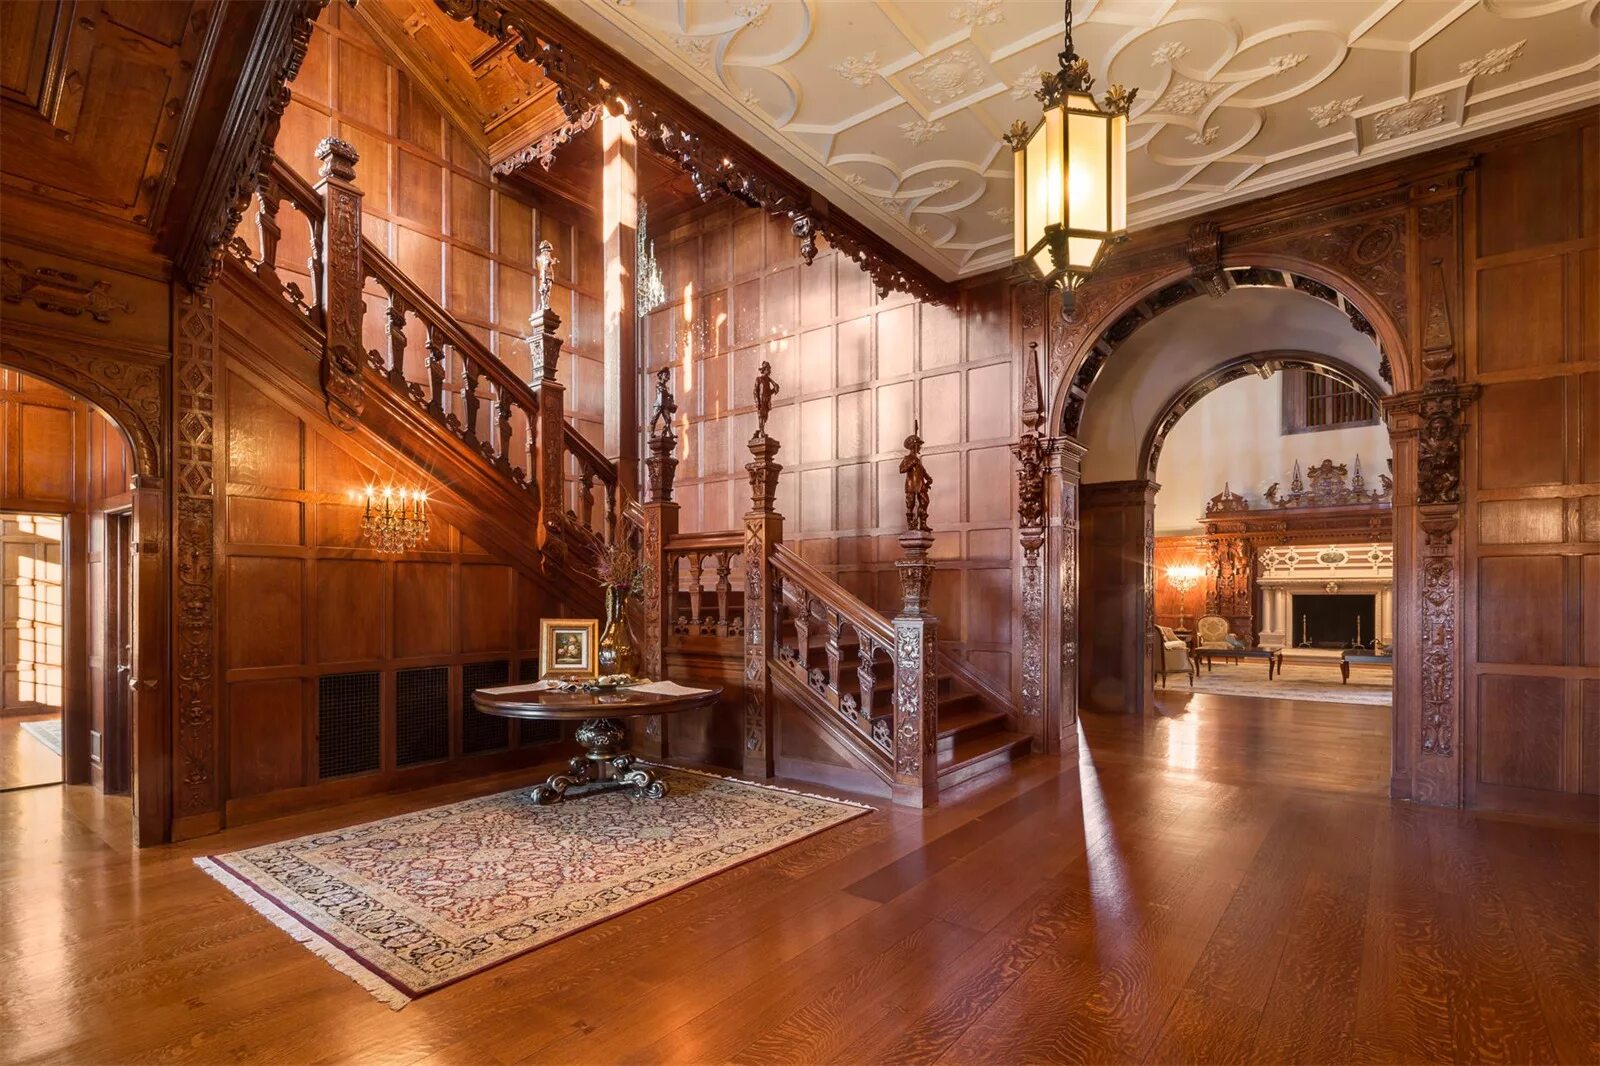 Грейнджер Холл особняк лестница. Особняк Greystone Mansion коридоры. Особняк в Англии в викторианском стиле внутри. Английский особняк Викторианский стиль интерьер.